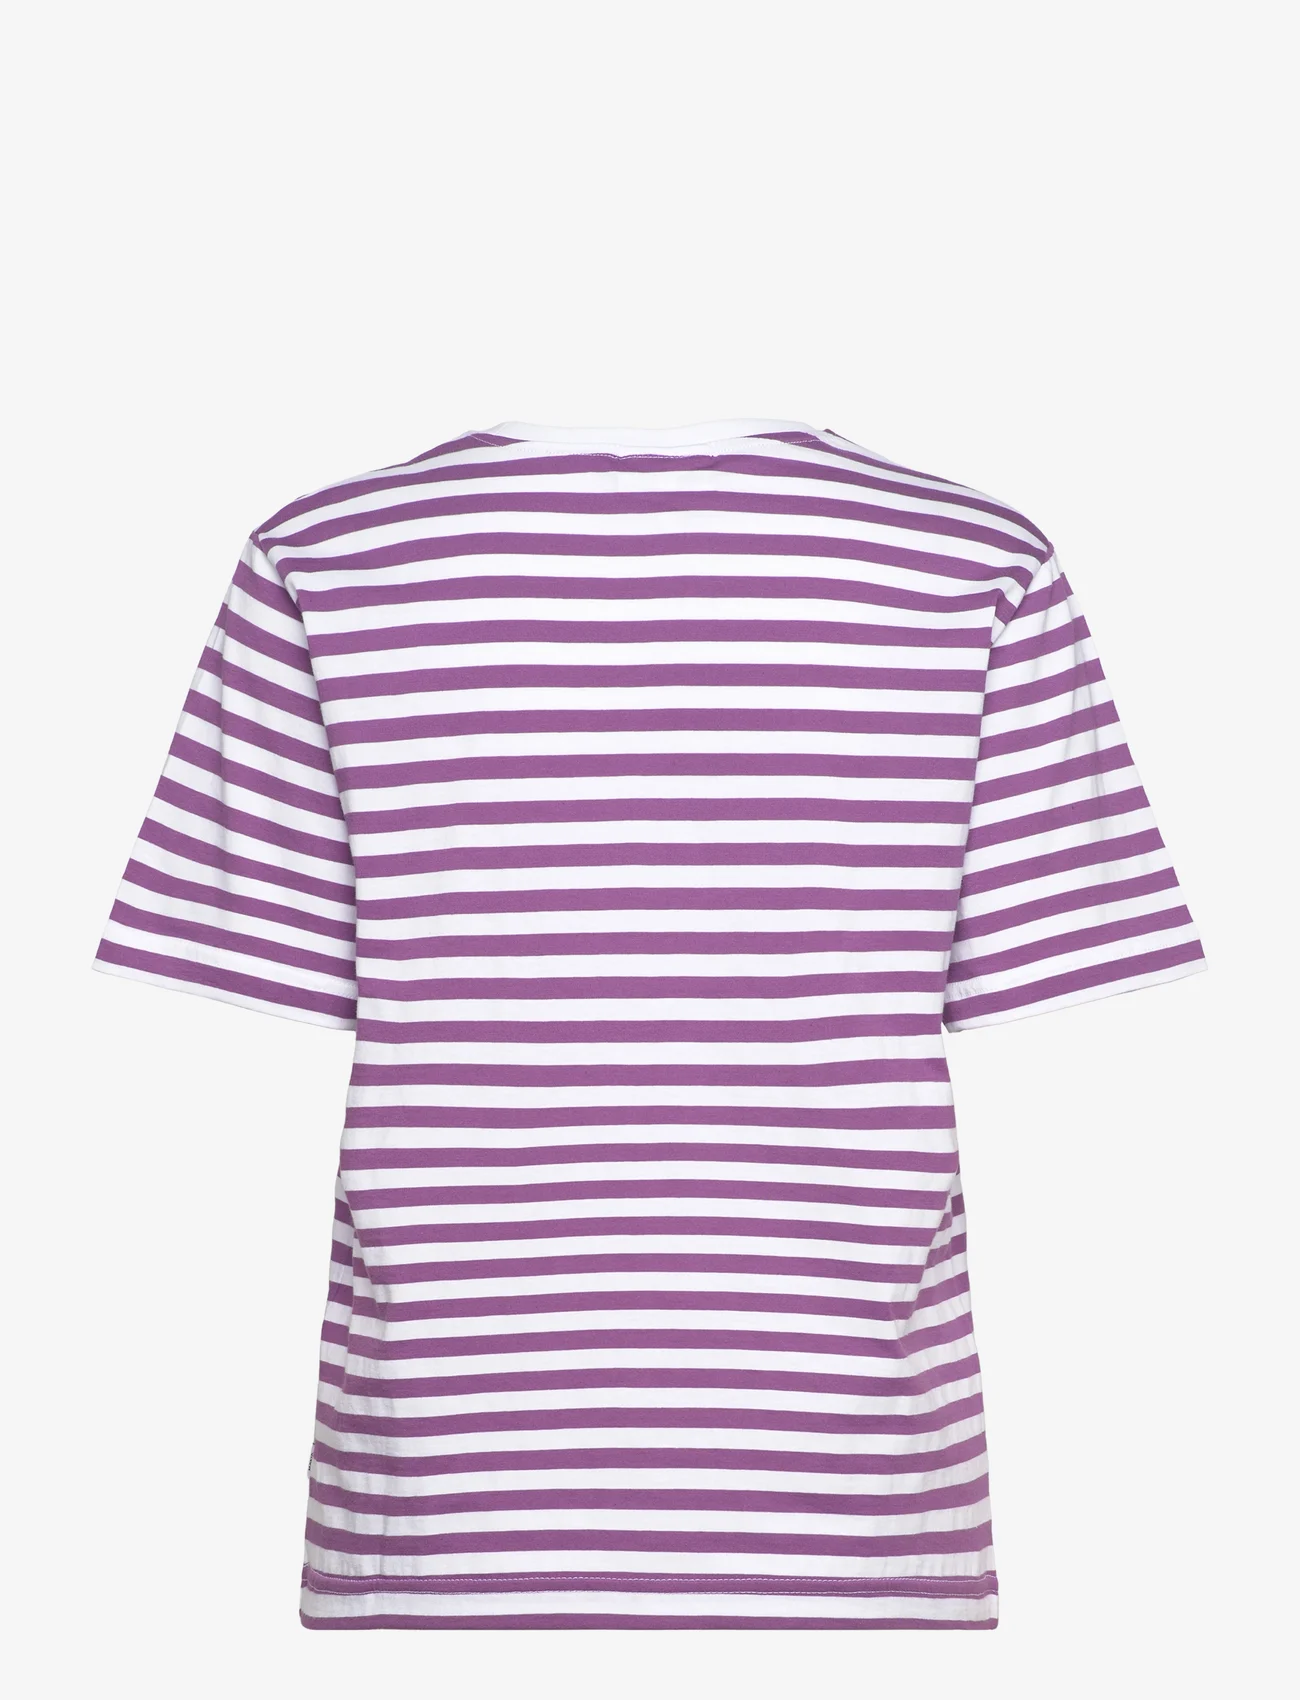 Makia - Verkstad T-Shirt - die niedrigsten preise - purple-white - 1